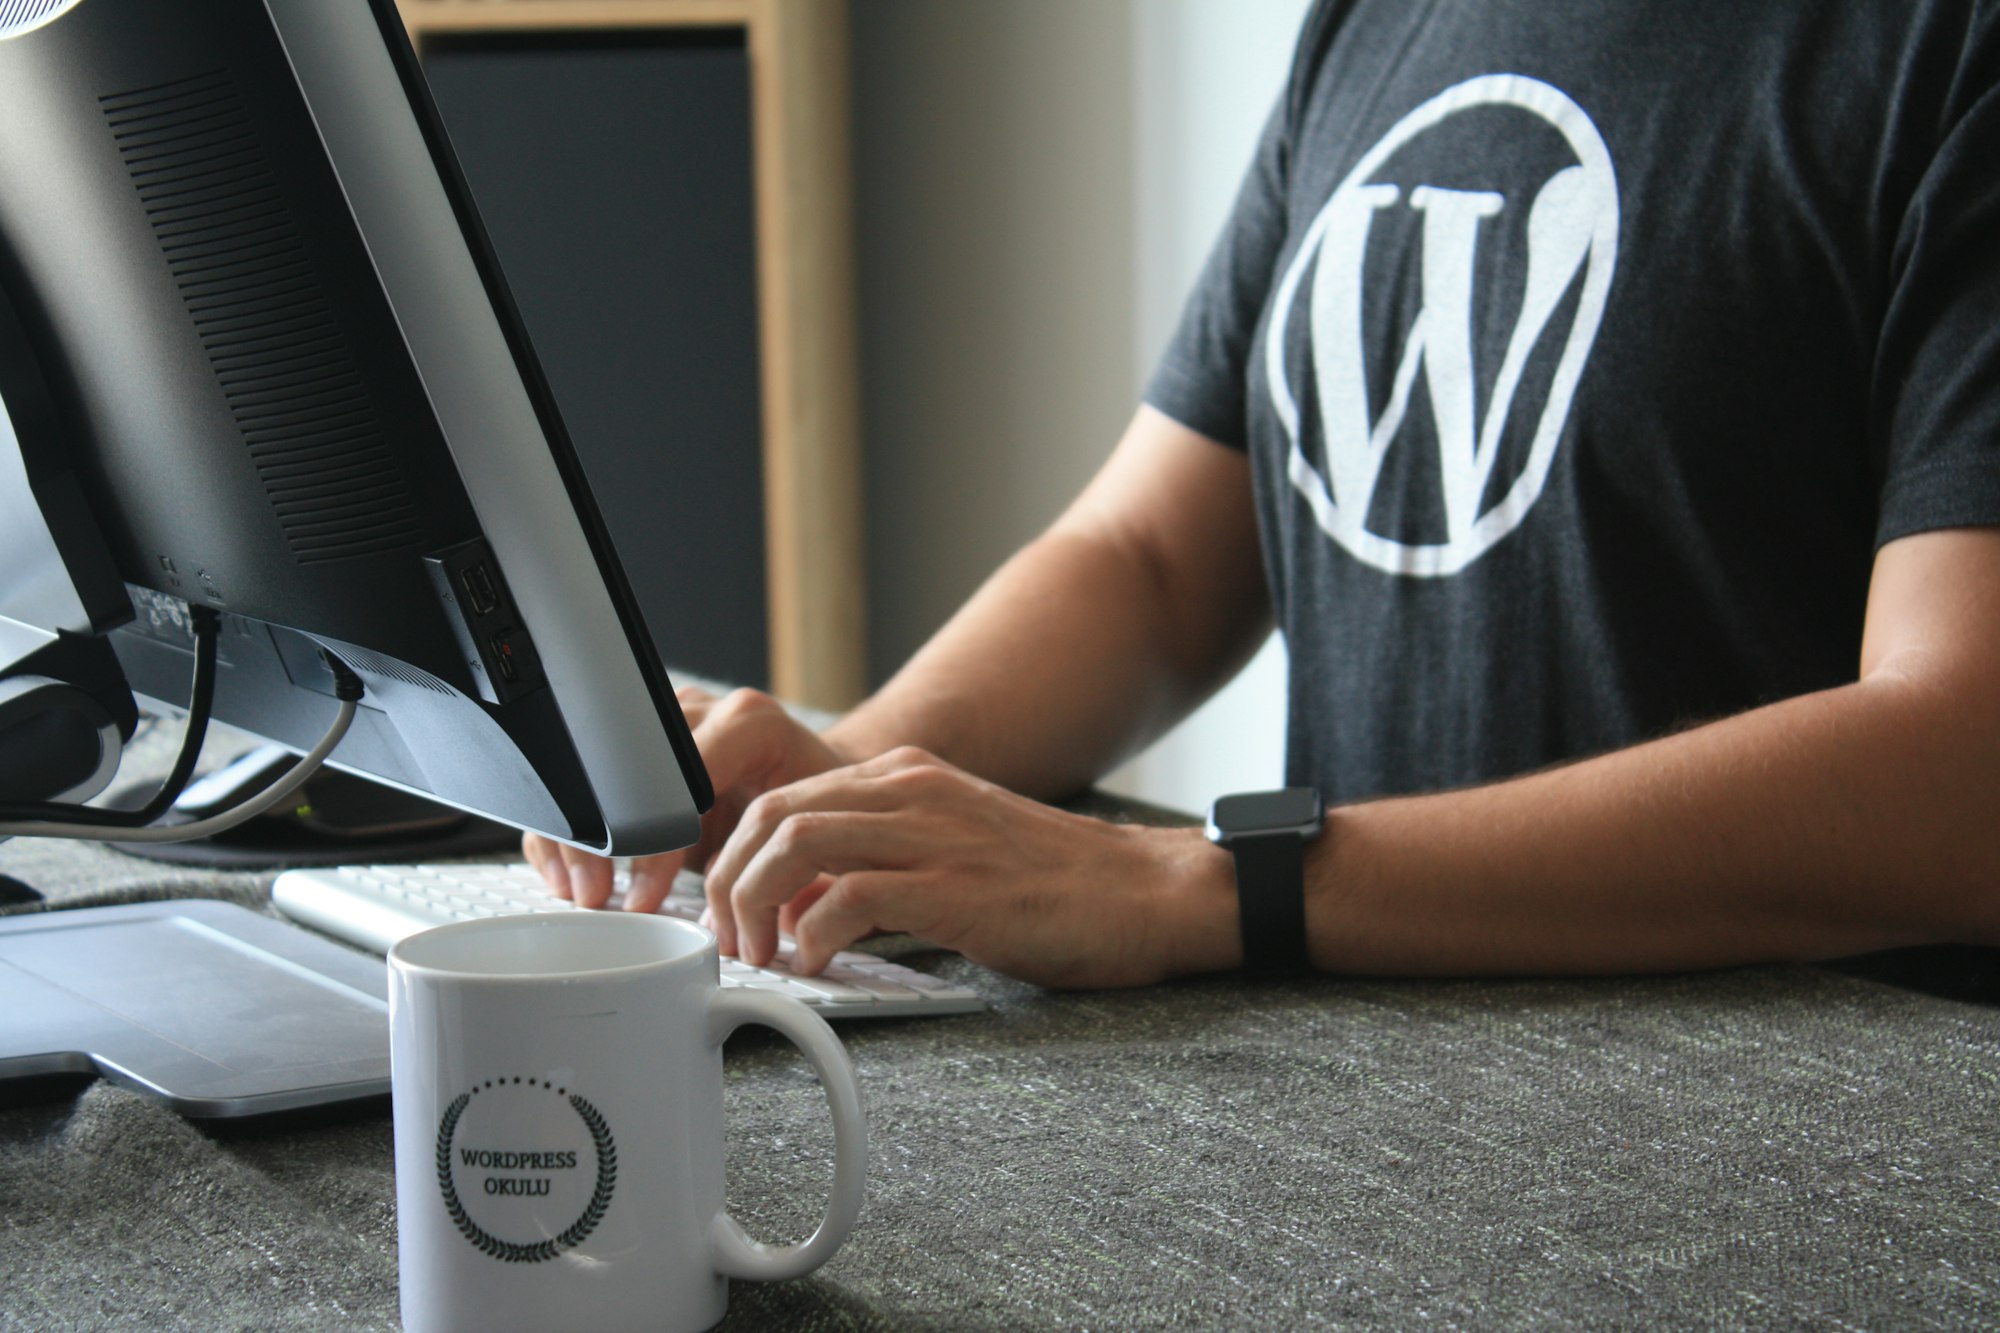 Обмен данными Wordpress - WooCommerce и 1C Предприятие